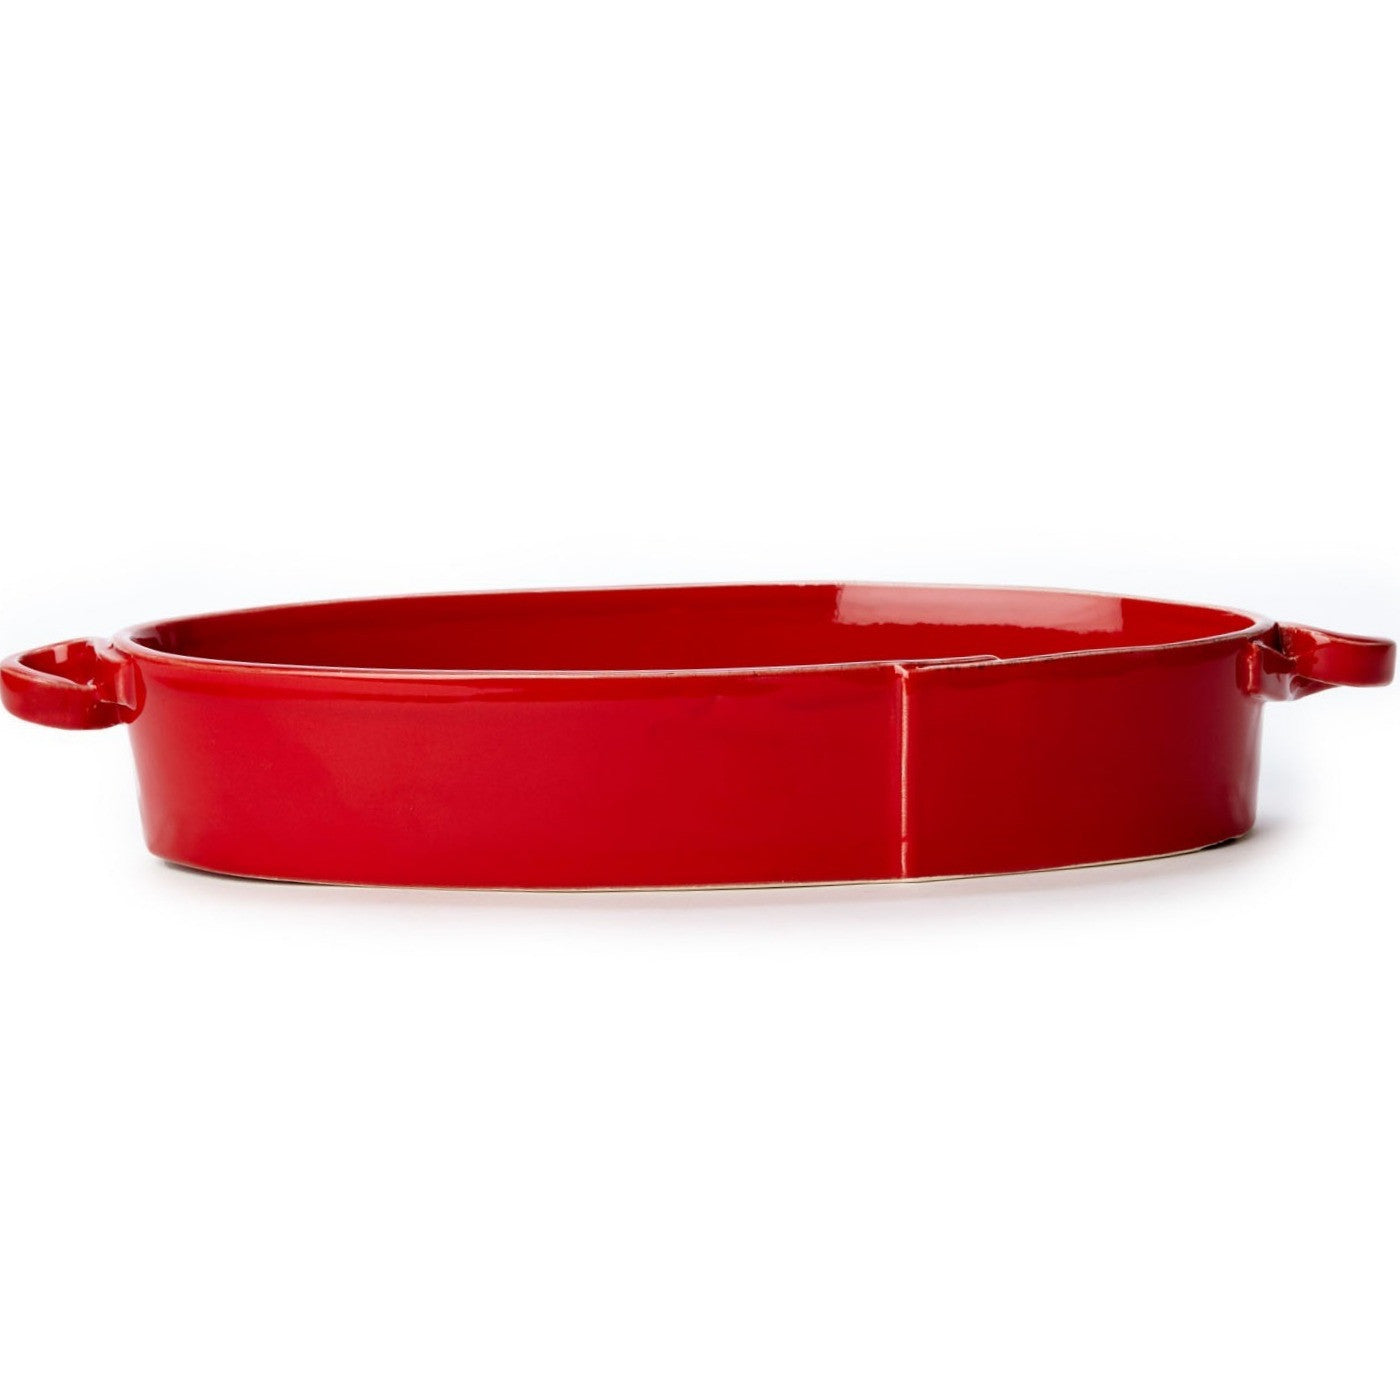 VIETRI: Lastra Red Handled Oval Baker - Artistica.com